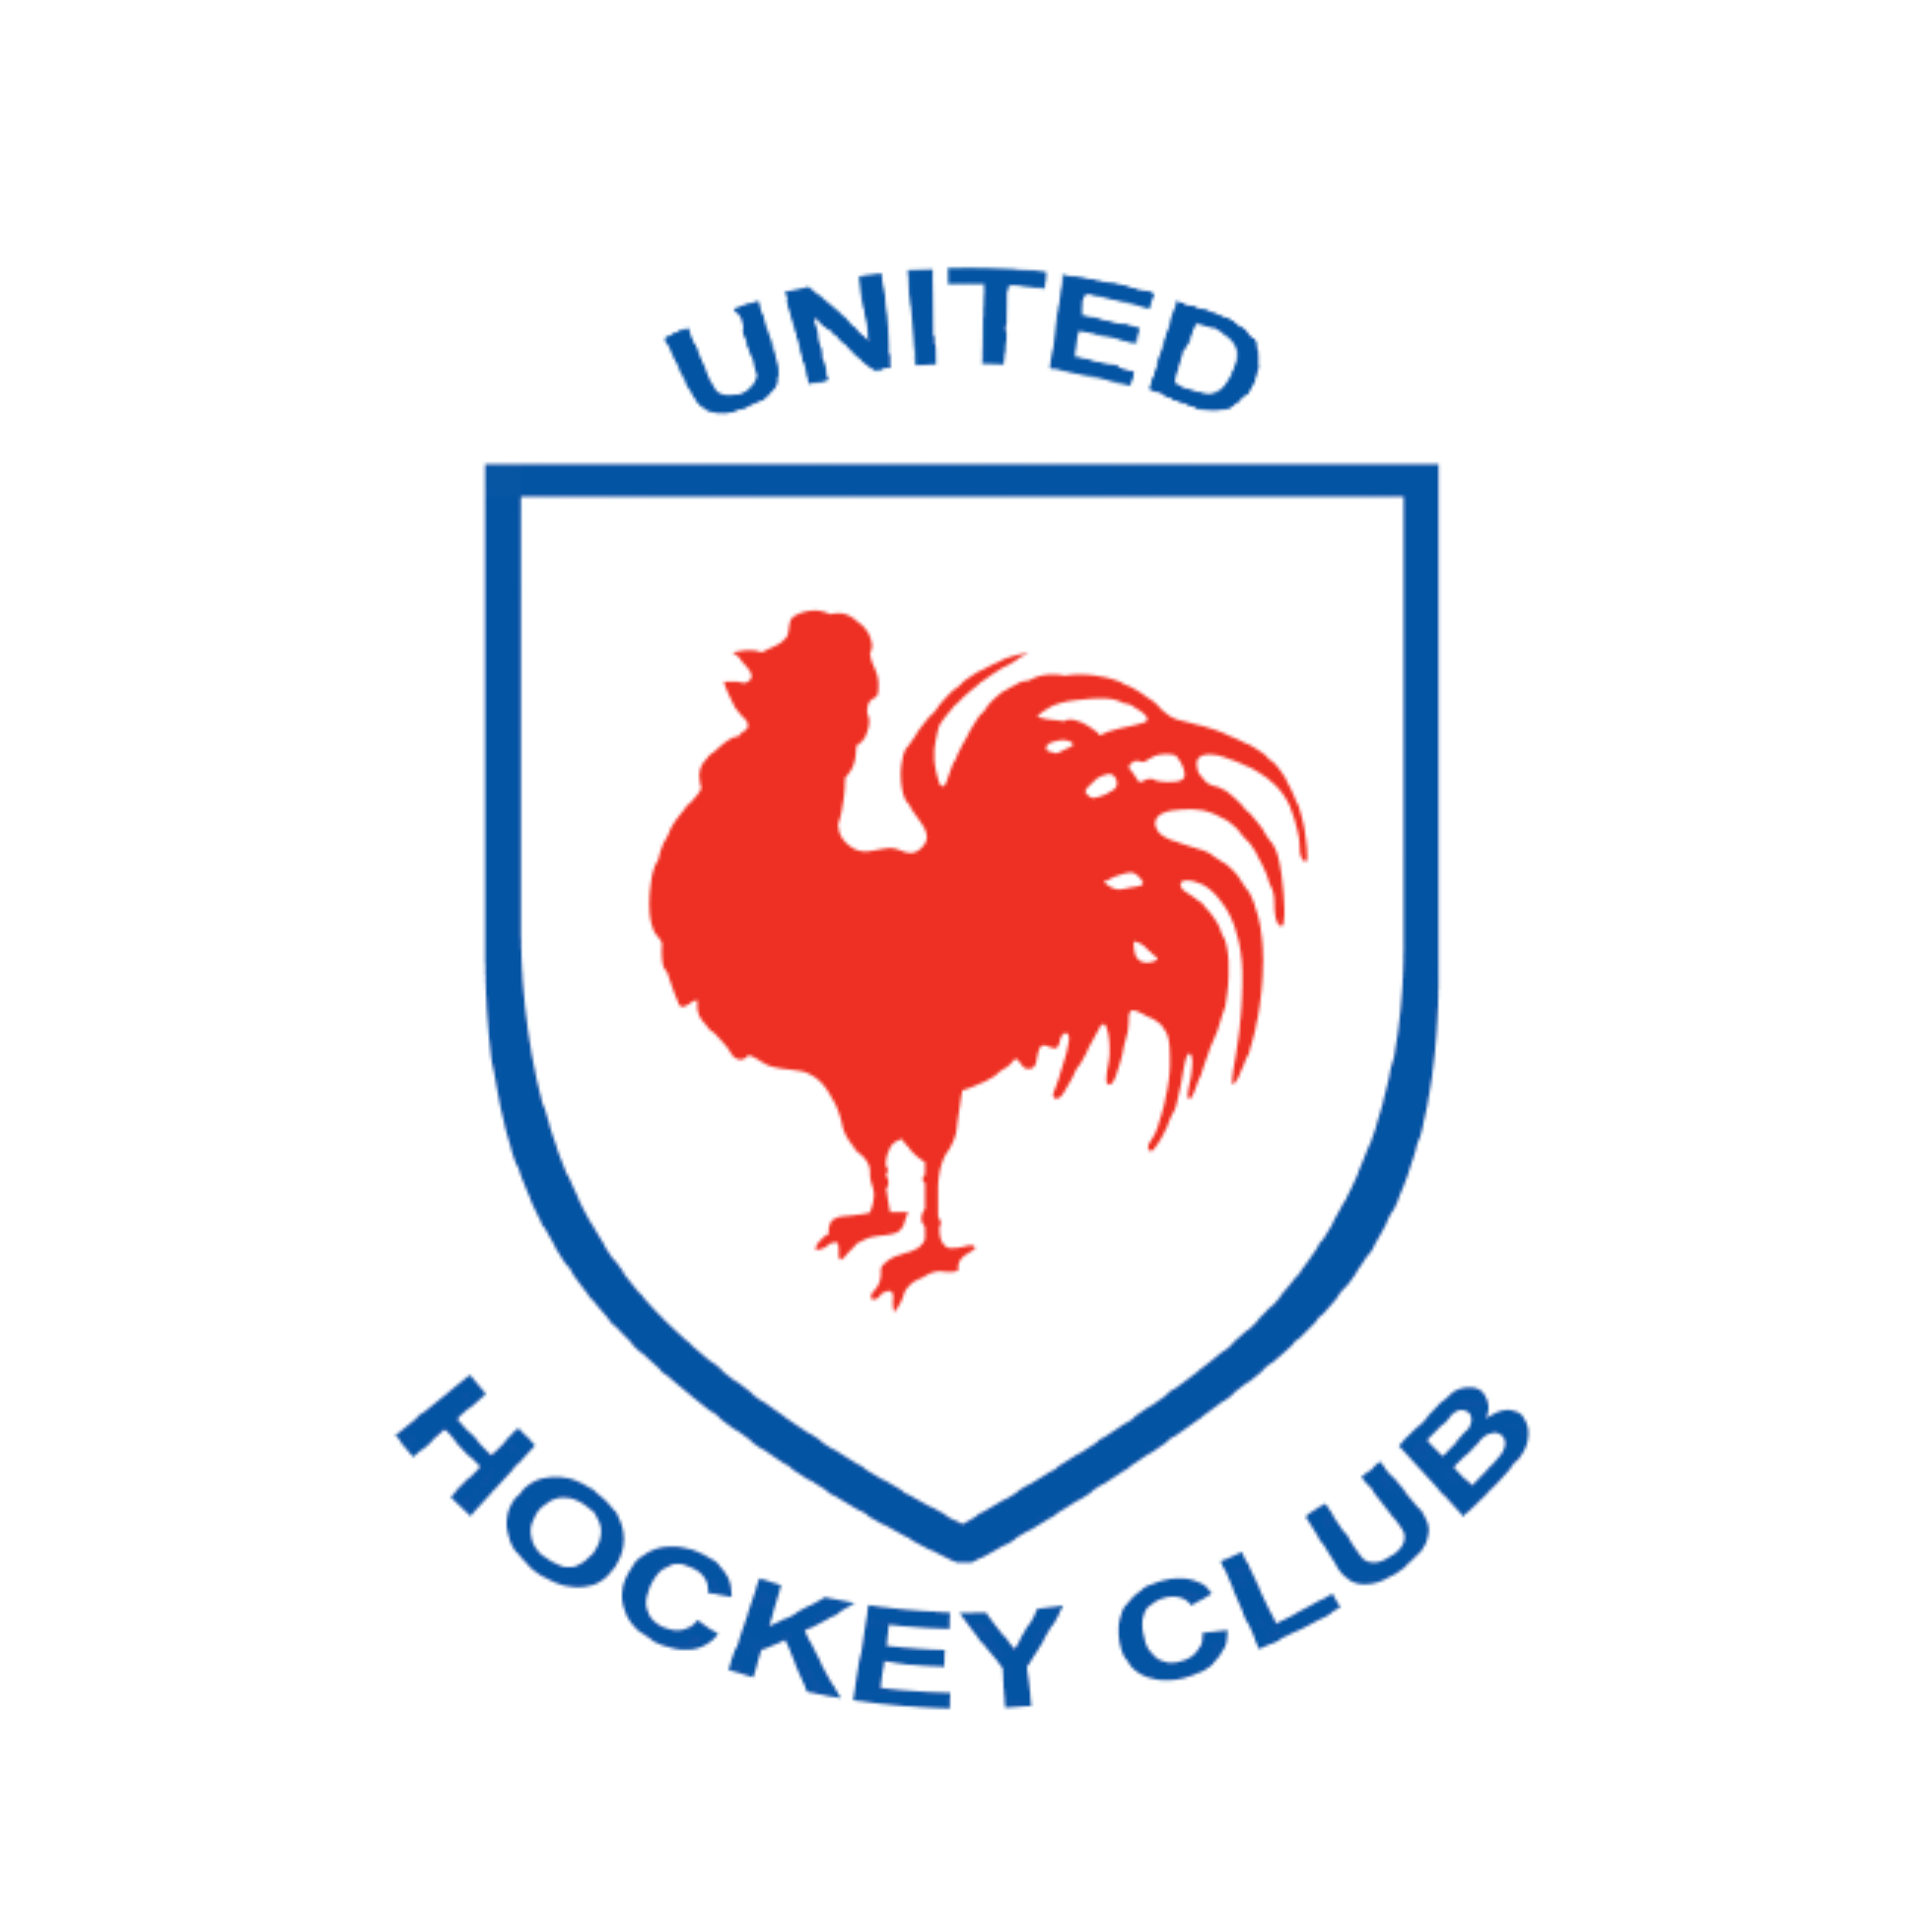 United Hockey Club logo